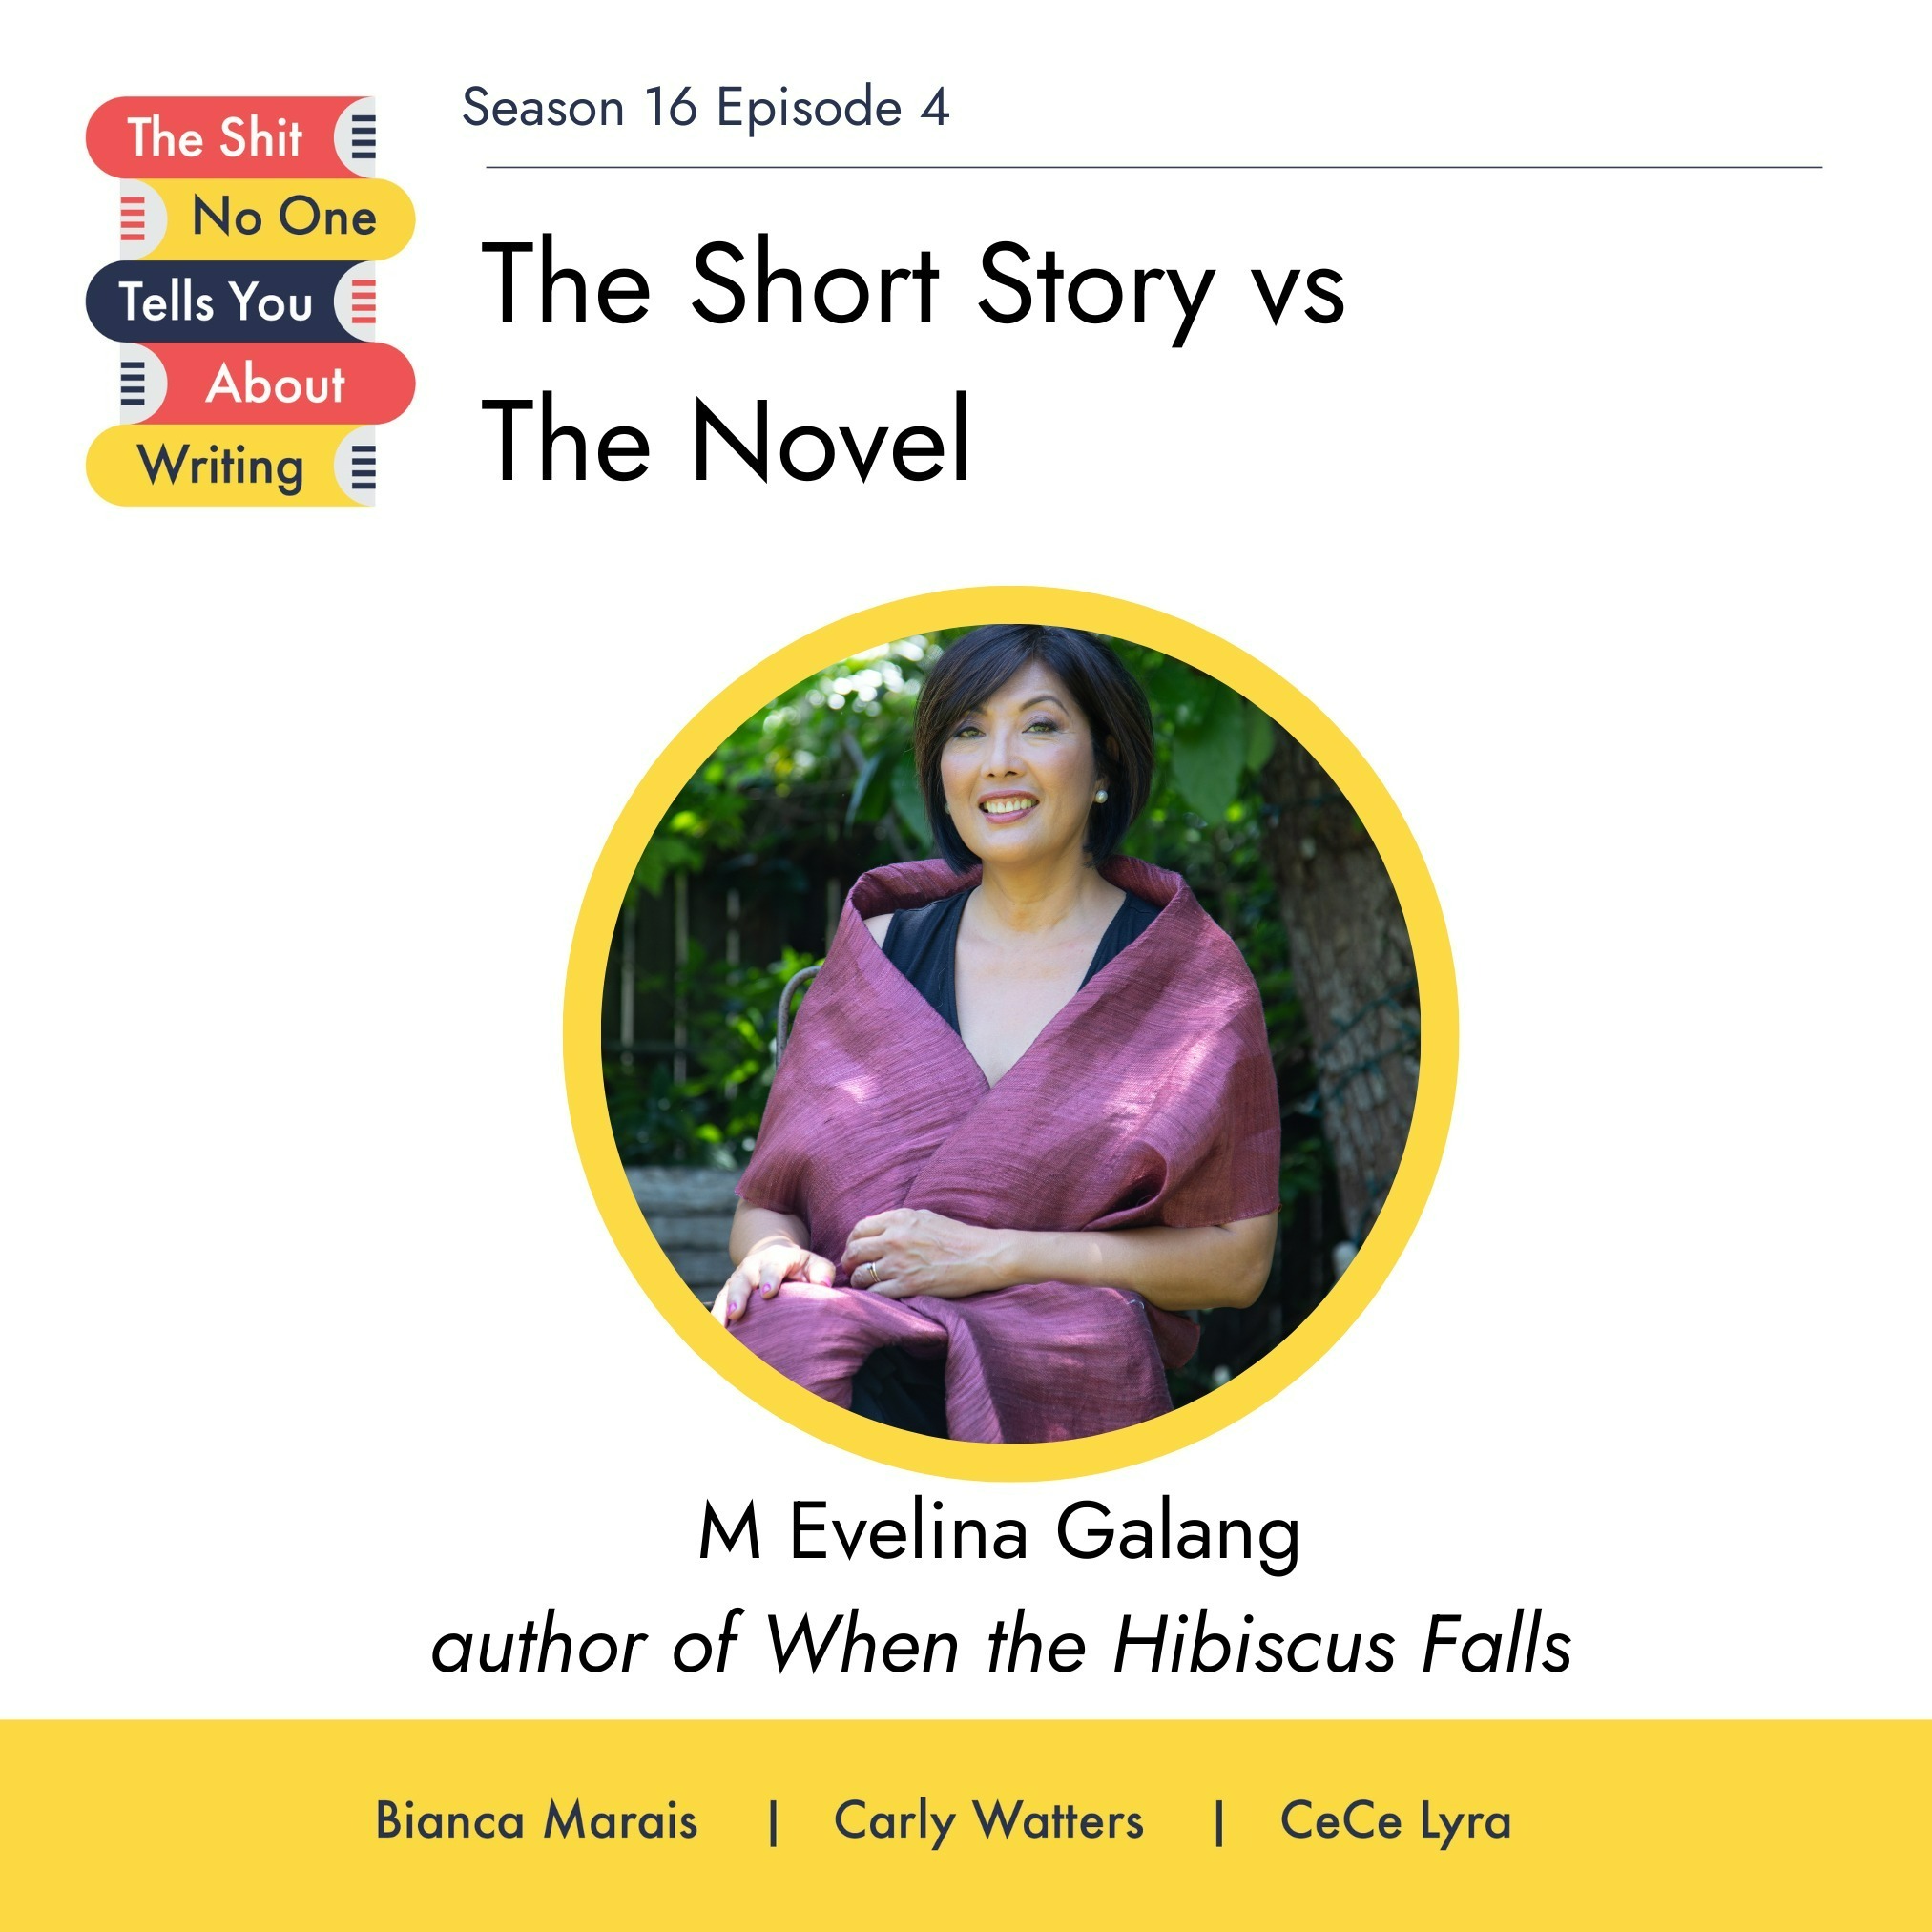 The Short Story vs The Novel